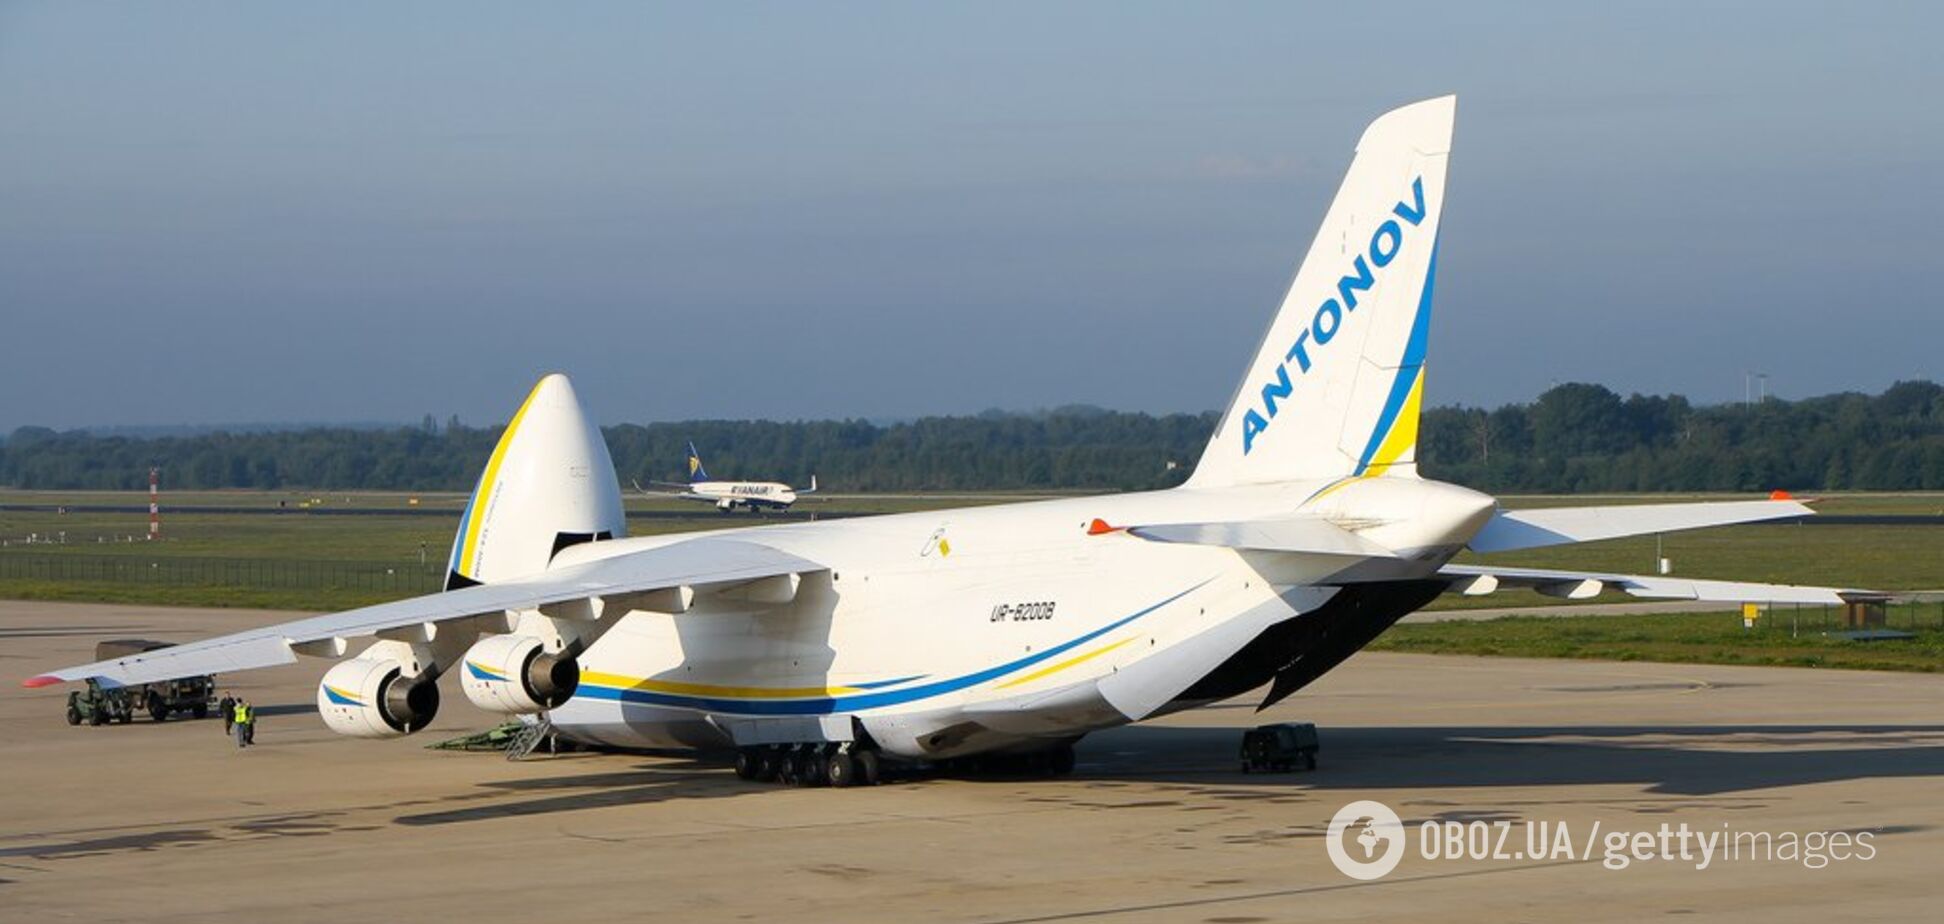 'Просто вау!' Сеть поразило мастерство украинских пилотов при посадке самолета